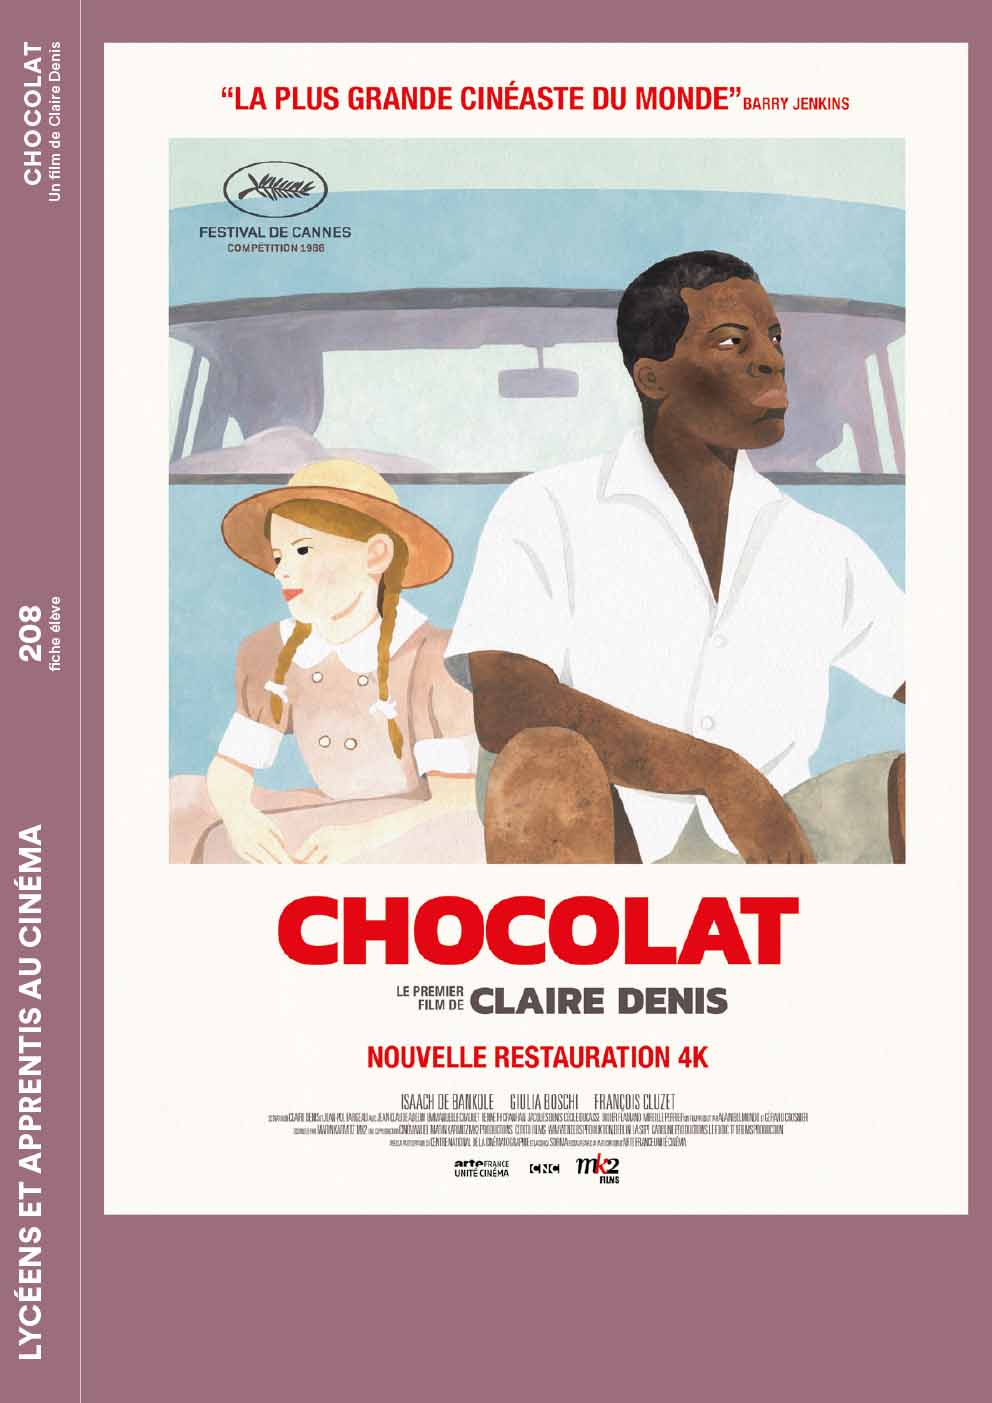  Couverture de la fiche élève du film Chocolat de Claire Denis